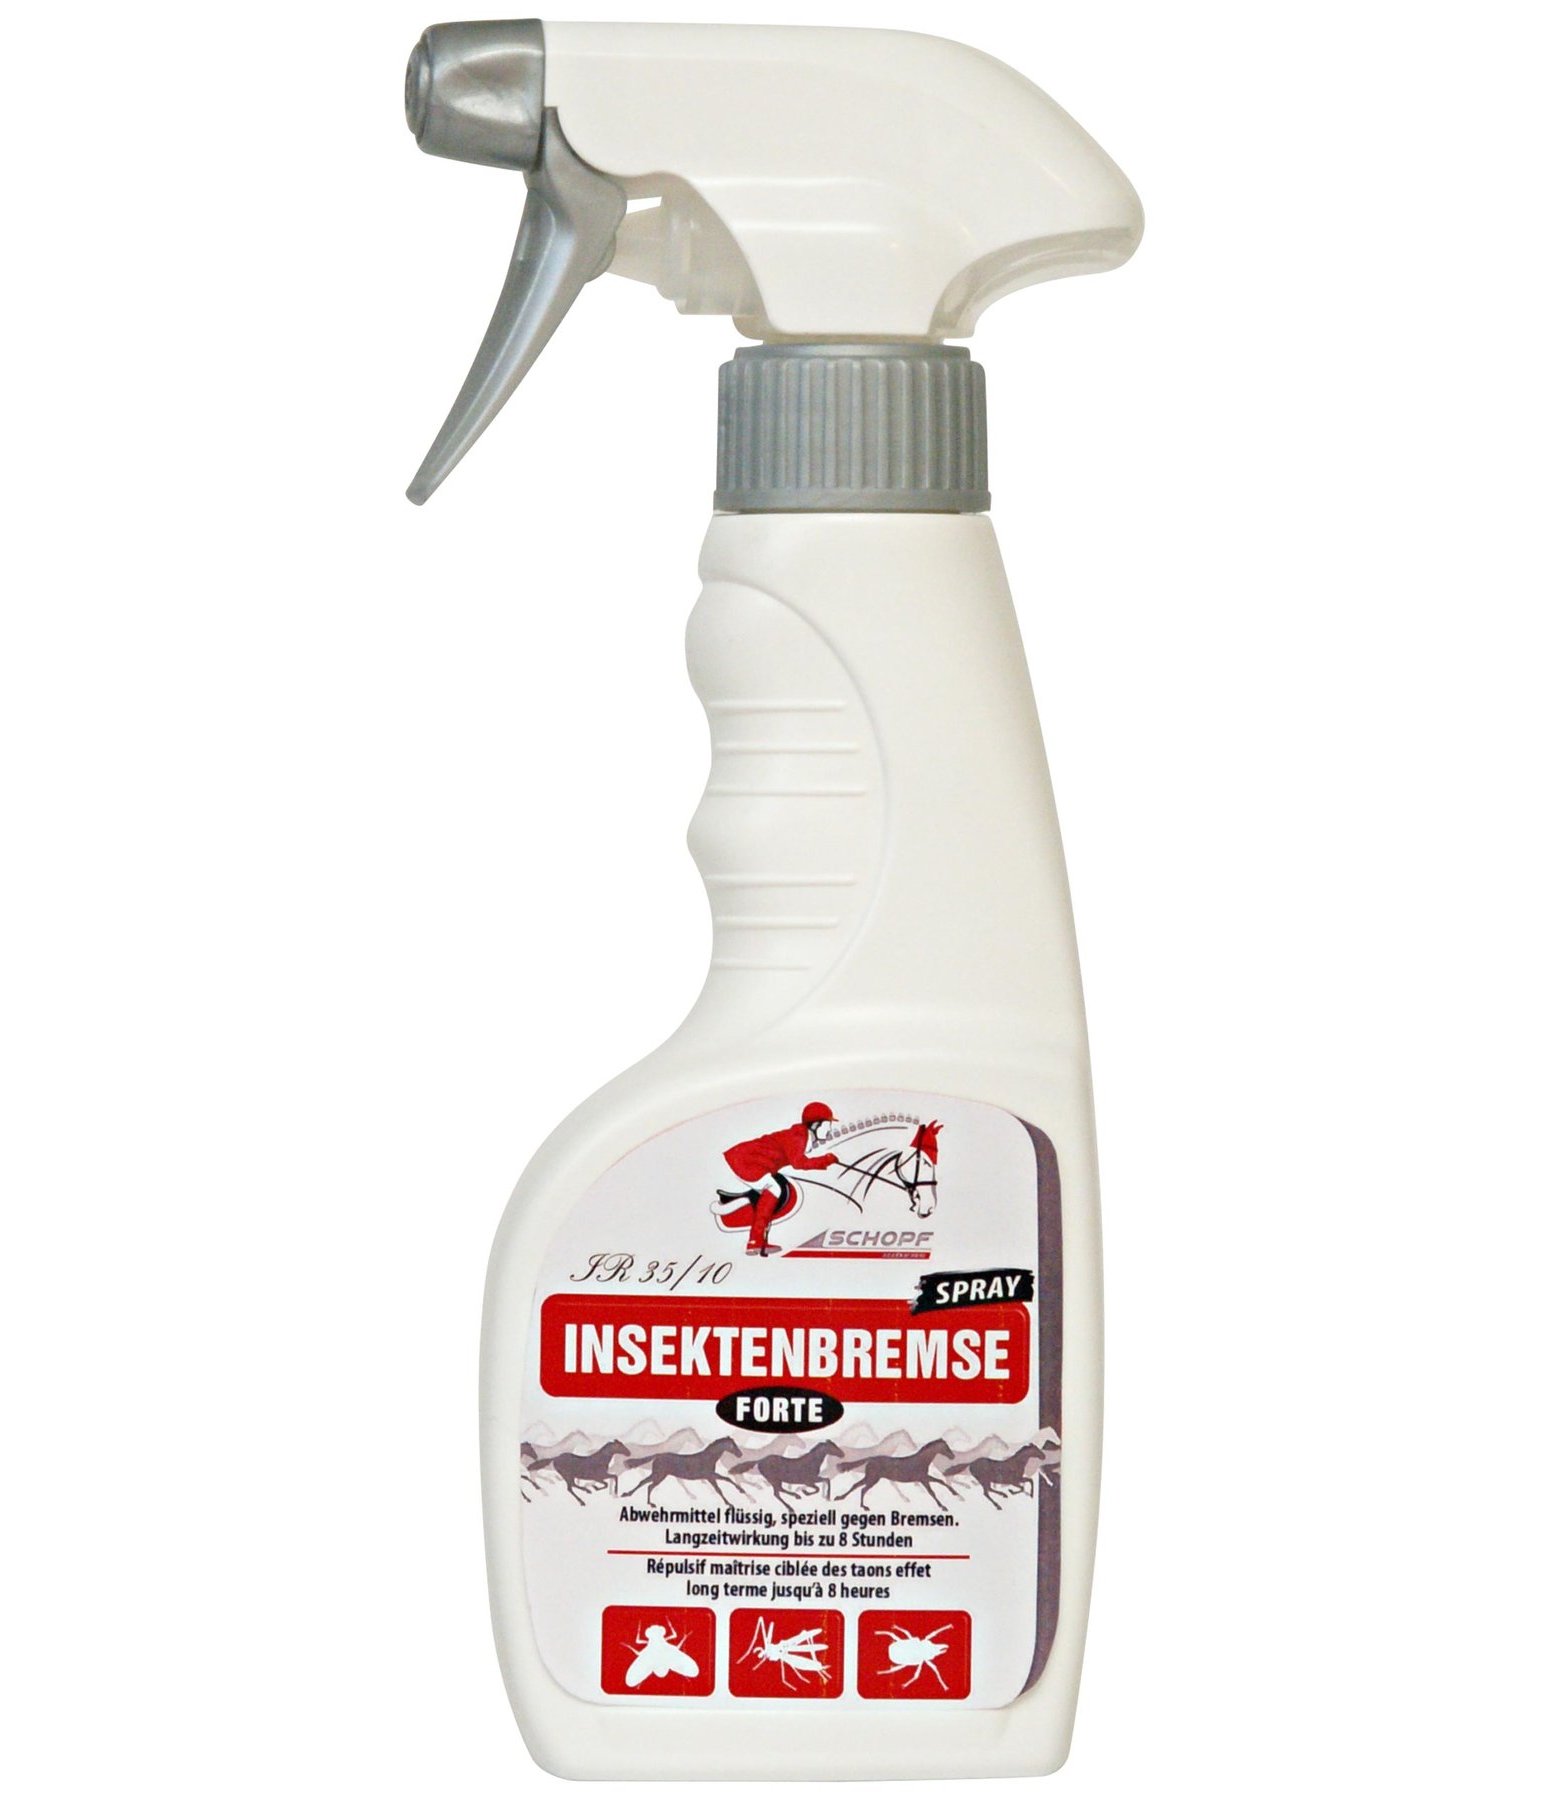 IR 35/10 insectenwerend middel Smoke Forte afweermiddel spray